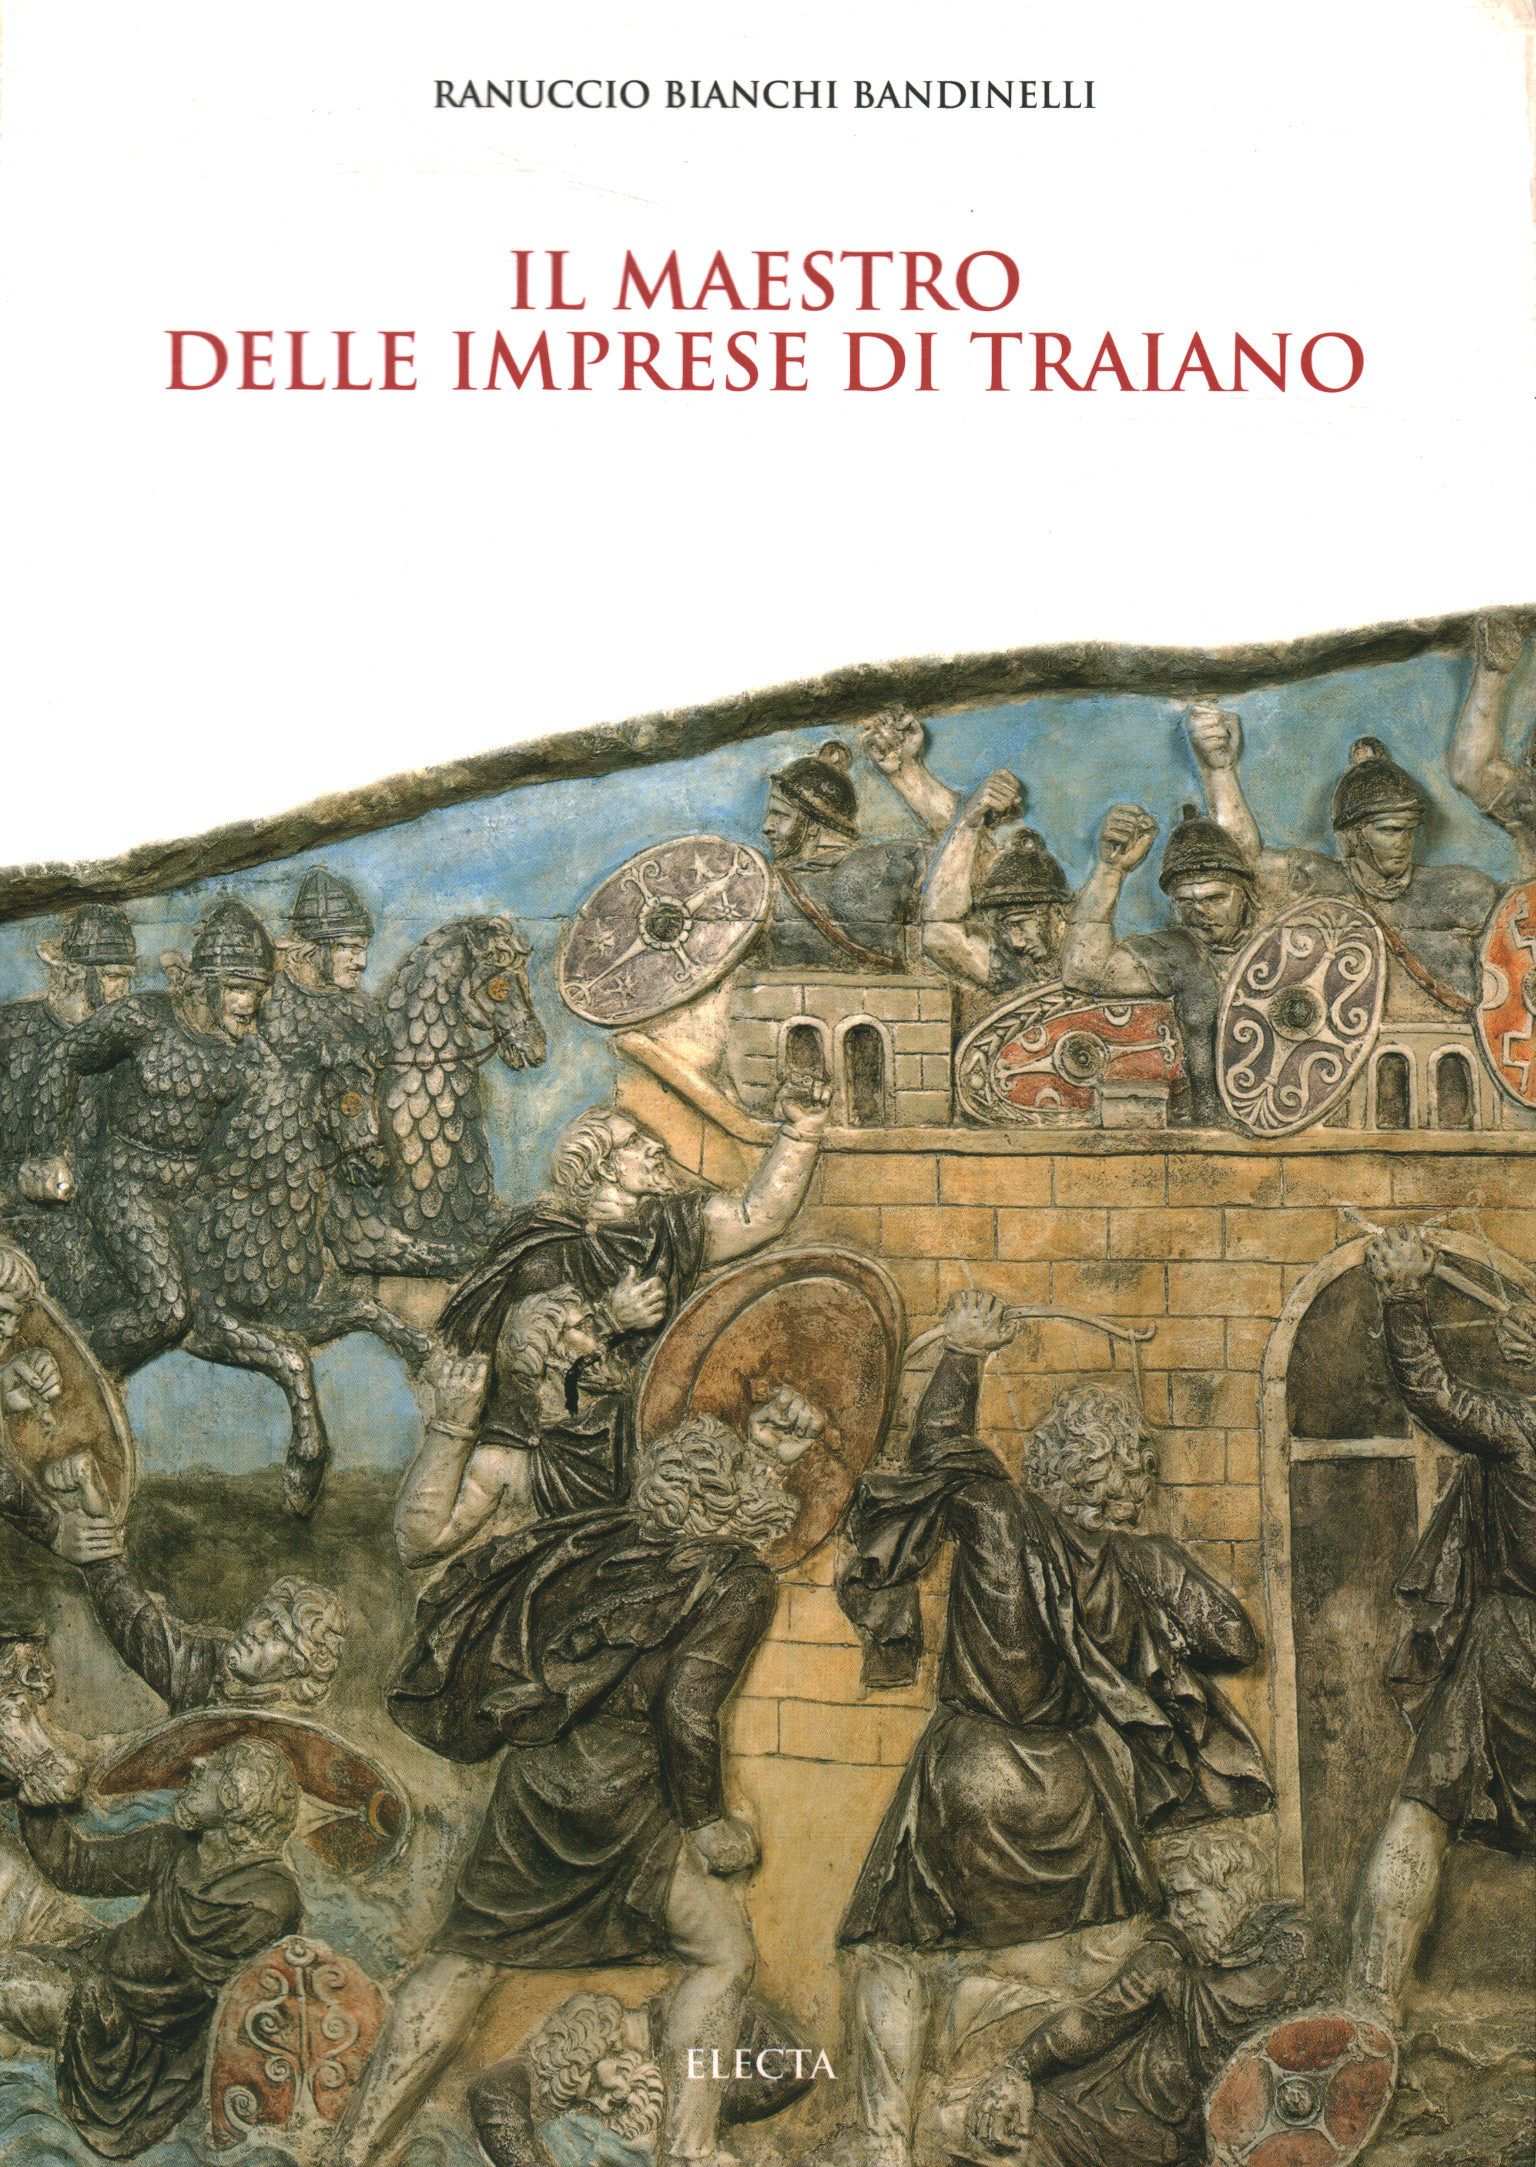 The master of Trajan's exploits